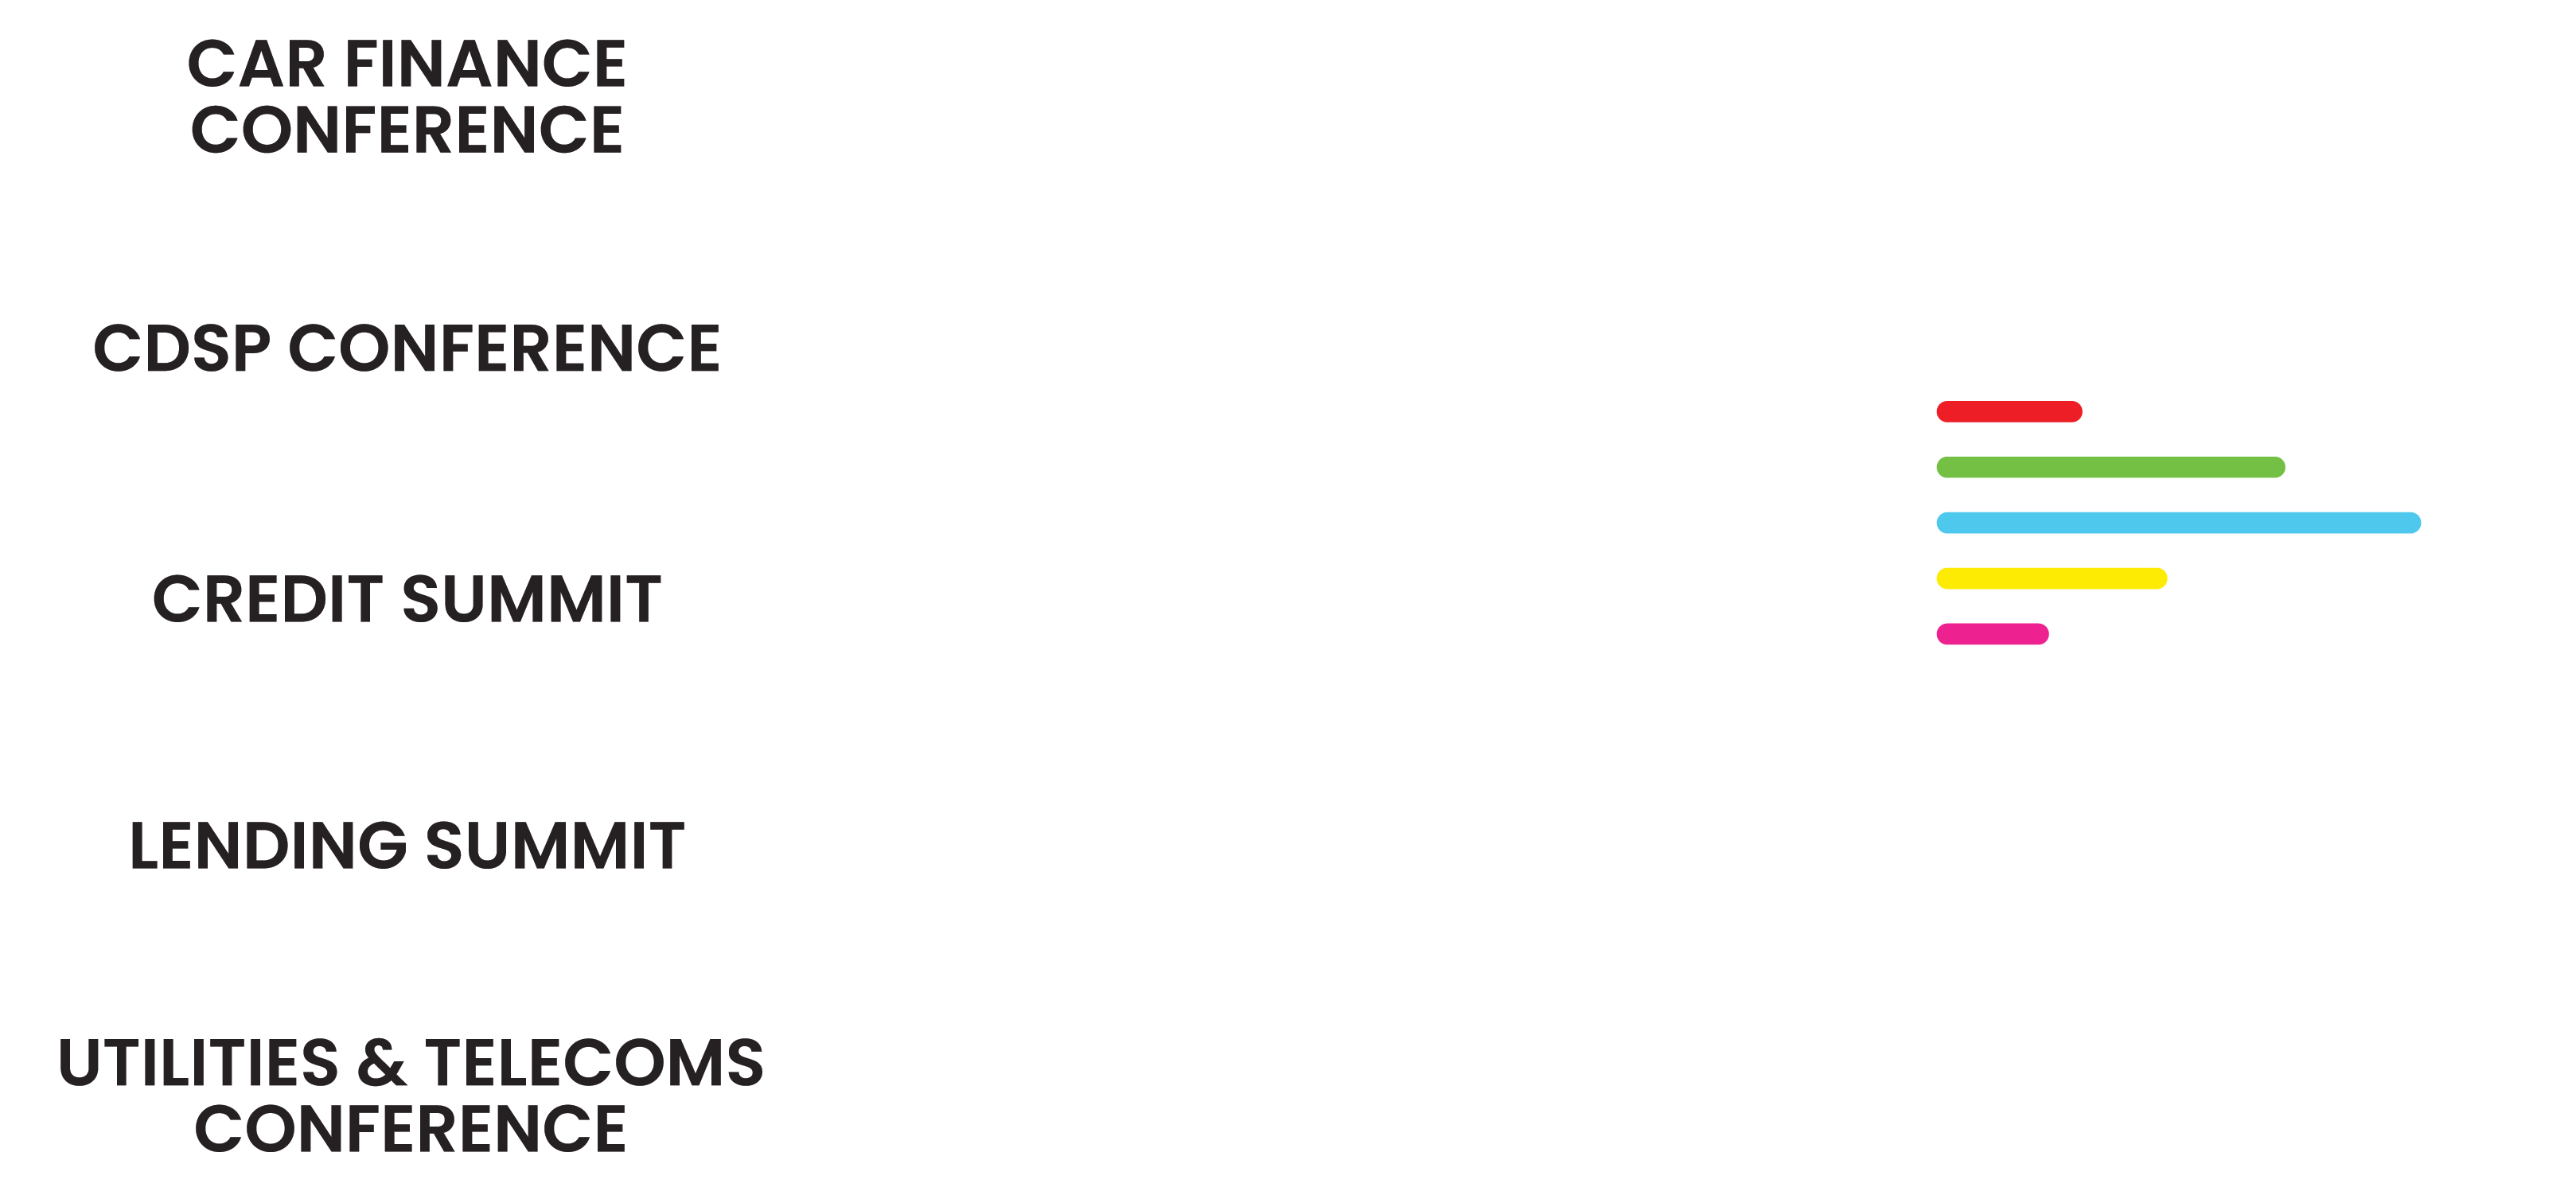 Credit Week is evolving!